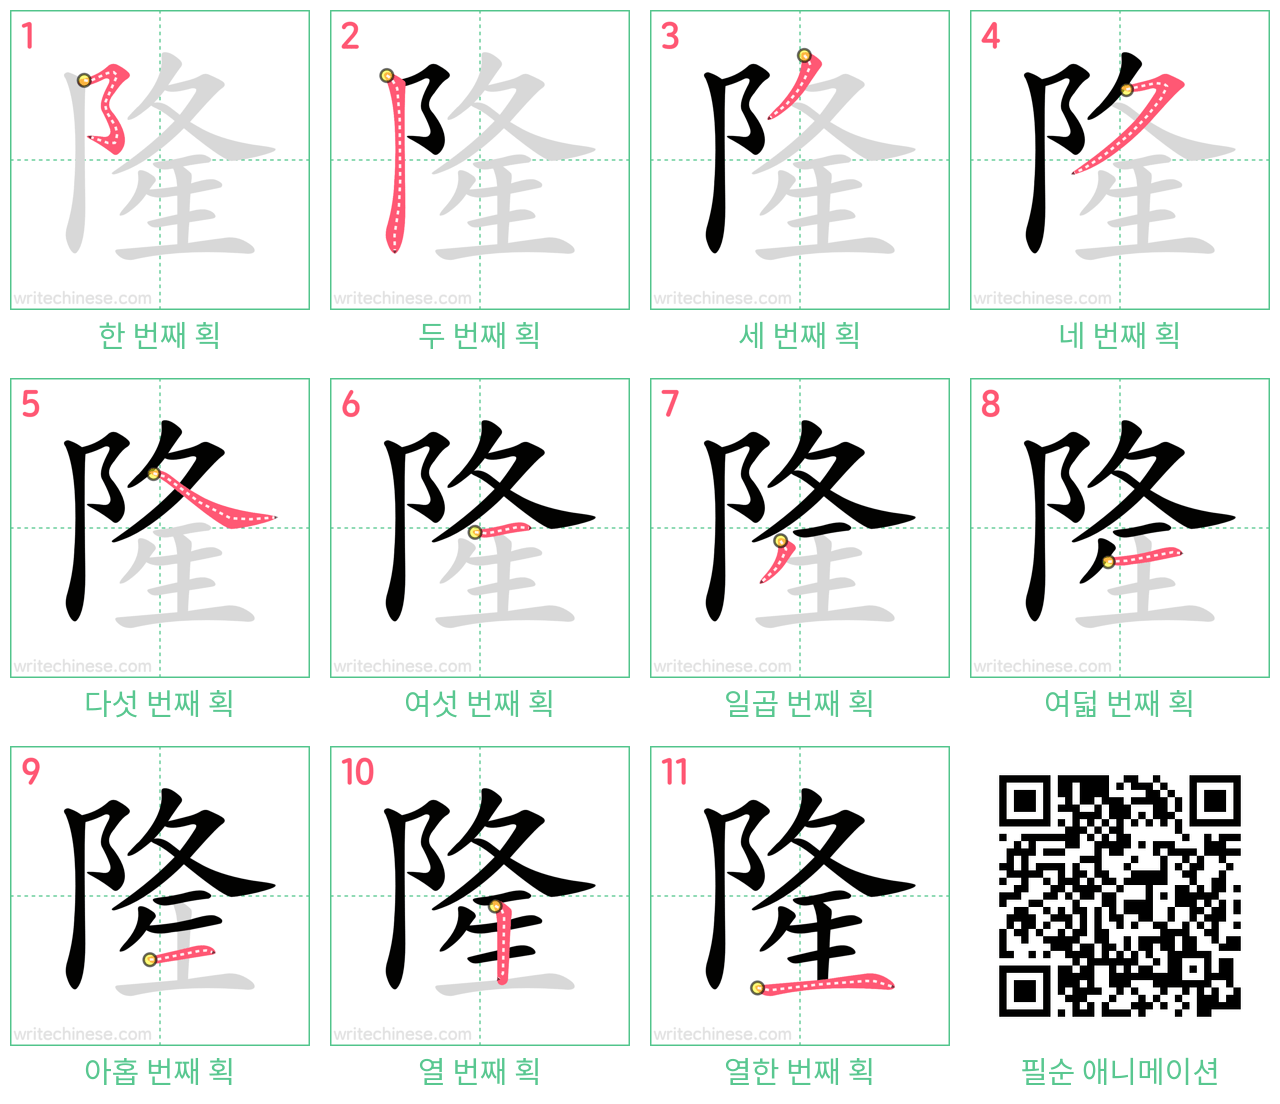 隆 step-by-step stroke order diagrams